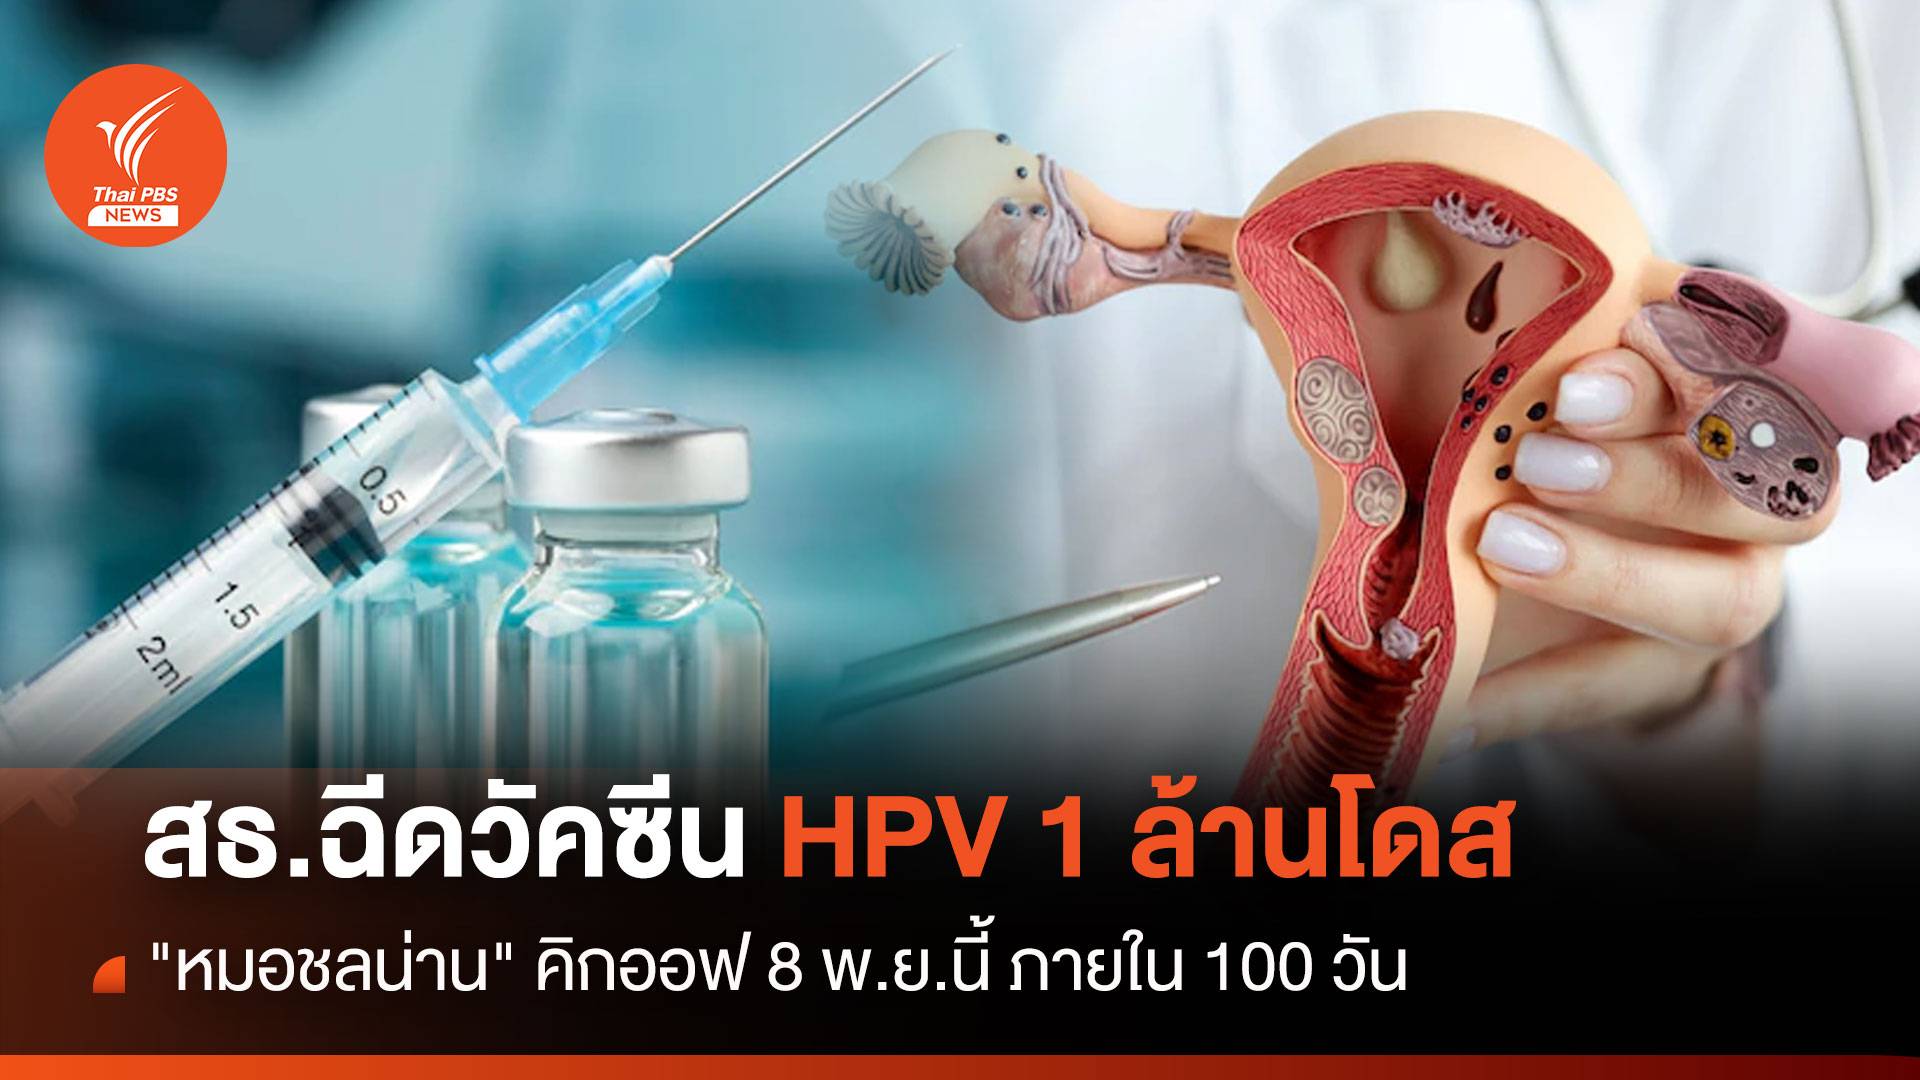 สธ.ฉีดวัคซีน HPV 1 ล้านโดส 100 วัน คิกออฟ  8 พ.ย.นี้ 